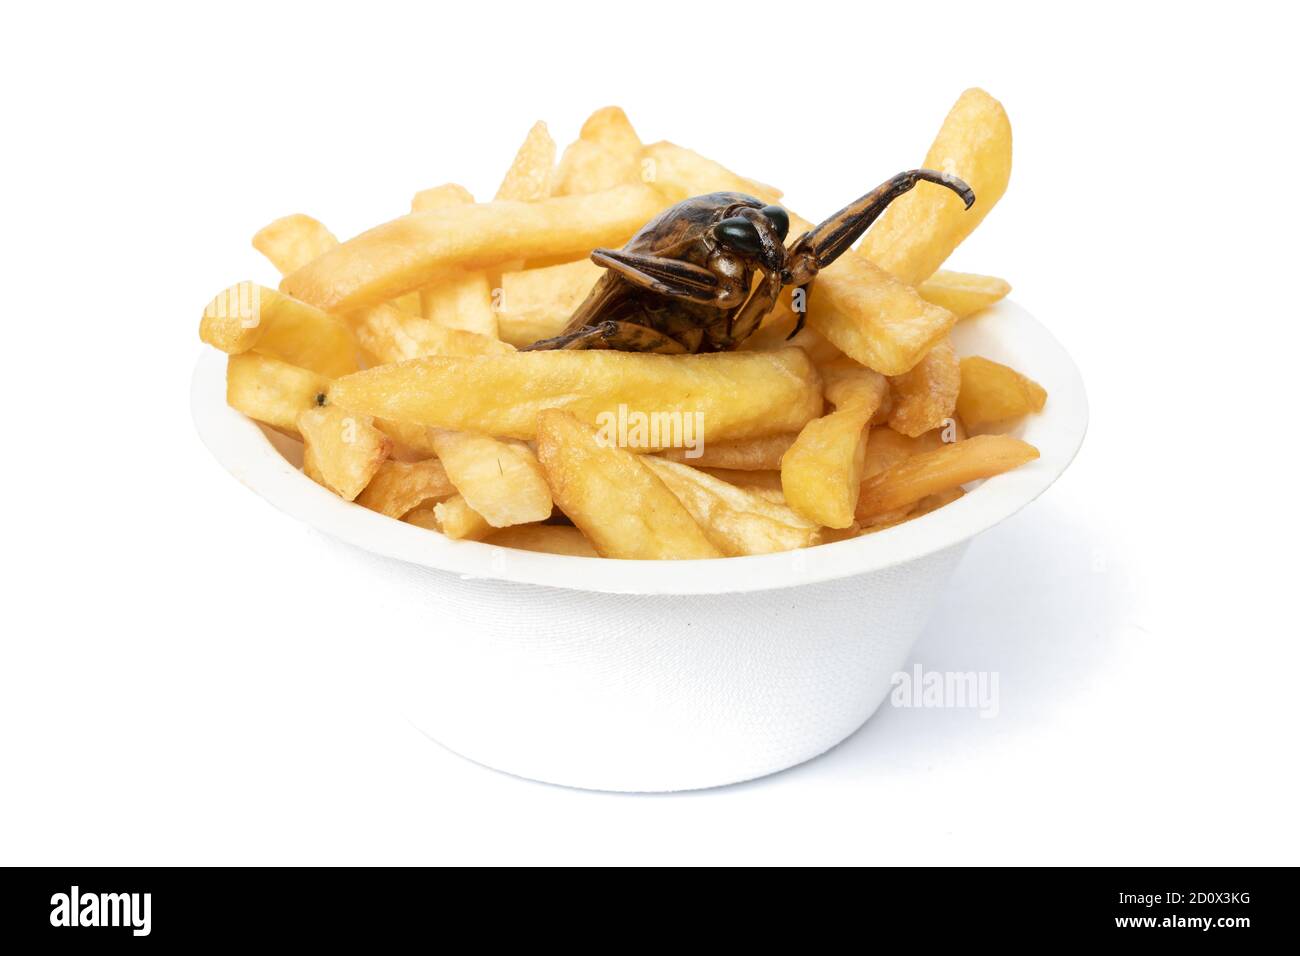 La oferta de una comida rápida con insectos comestibles. Una cucaracha frita con patatas fritas en taza. Foto de stock